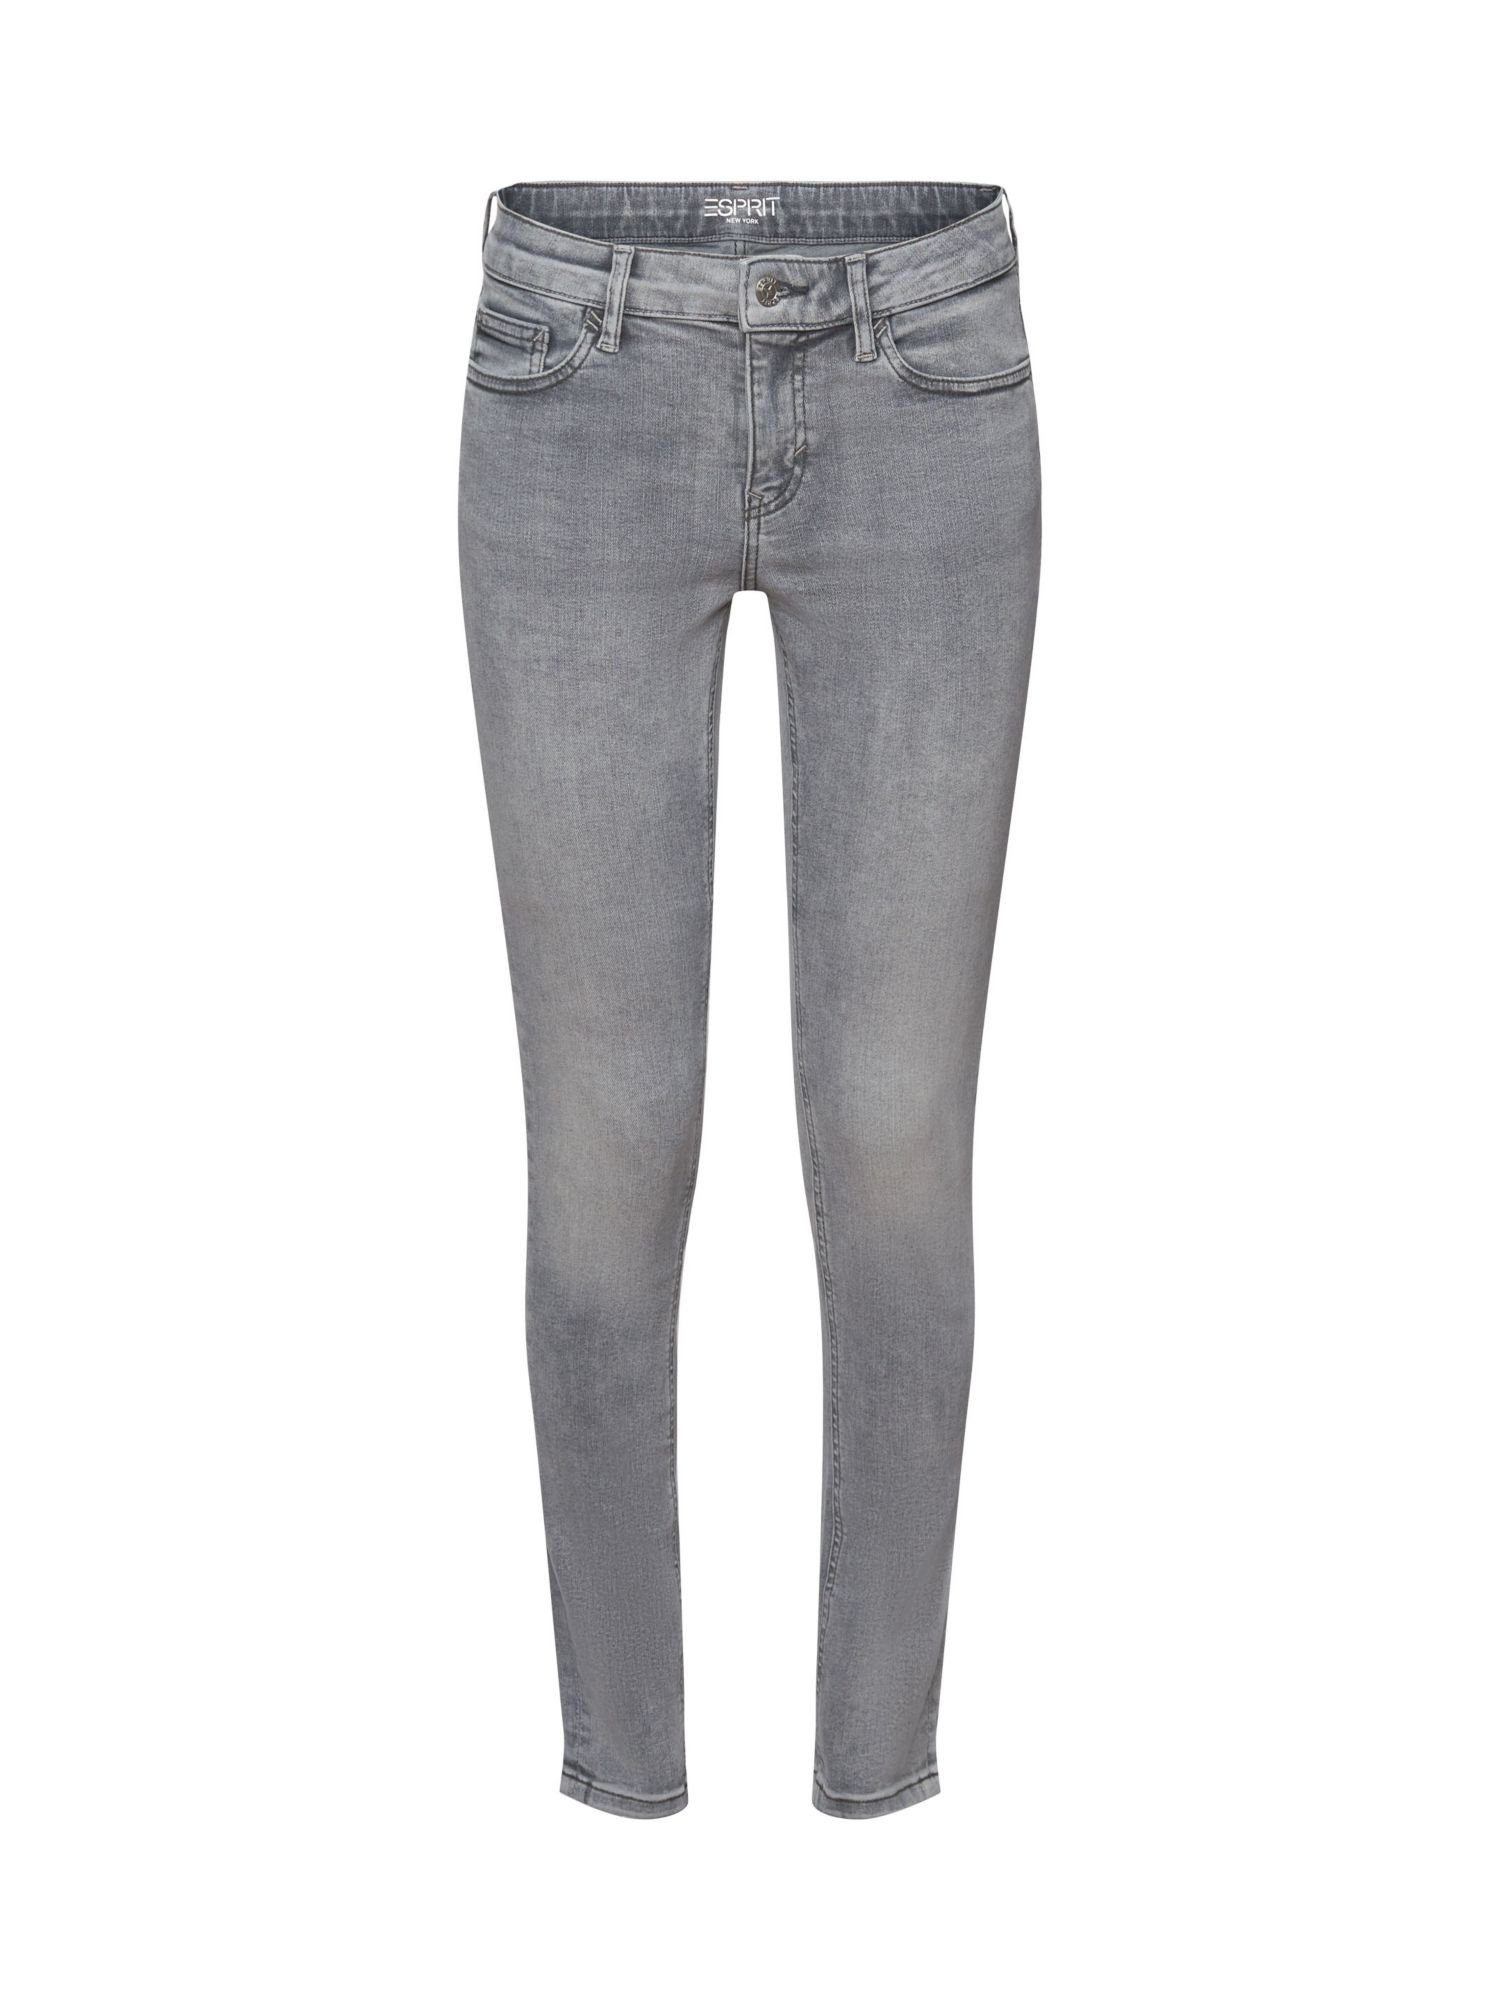 Esprit Skinny-fit-Jeans Skinny Jeans mittlerer Bundhöhe mit